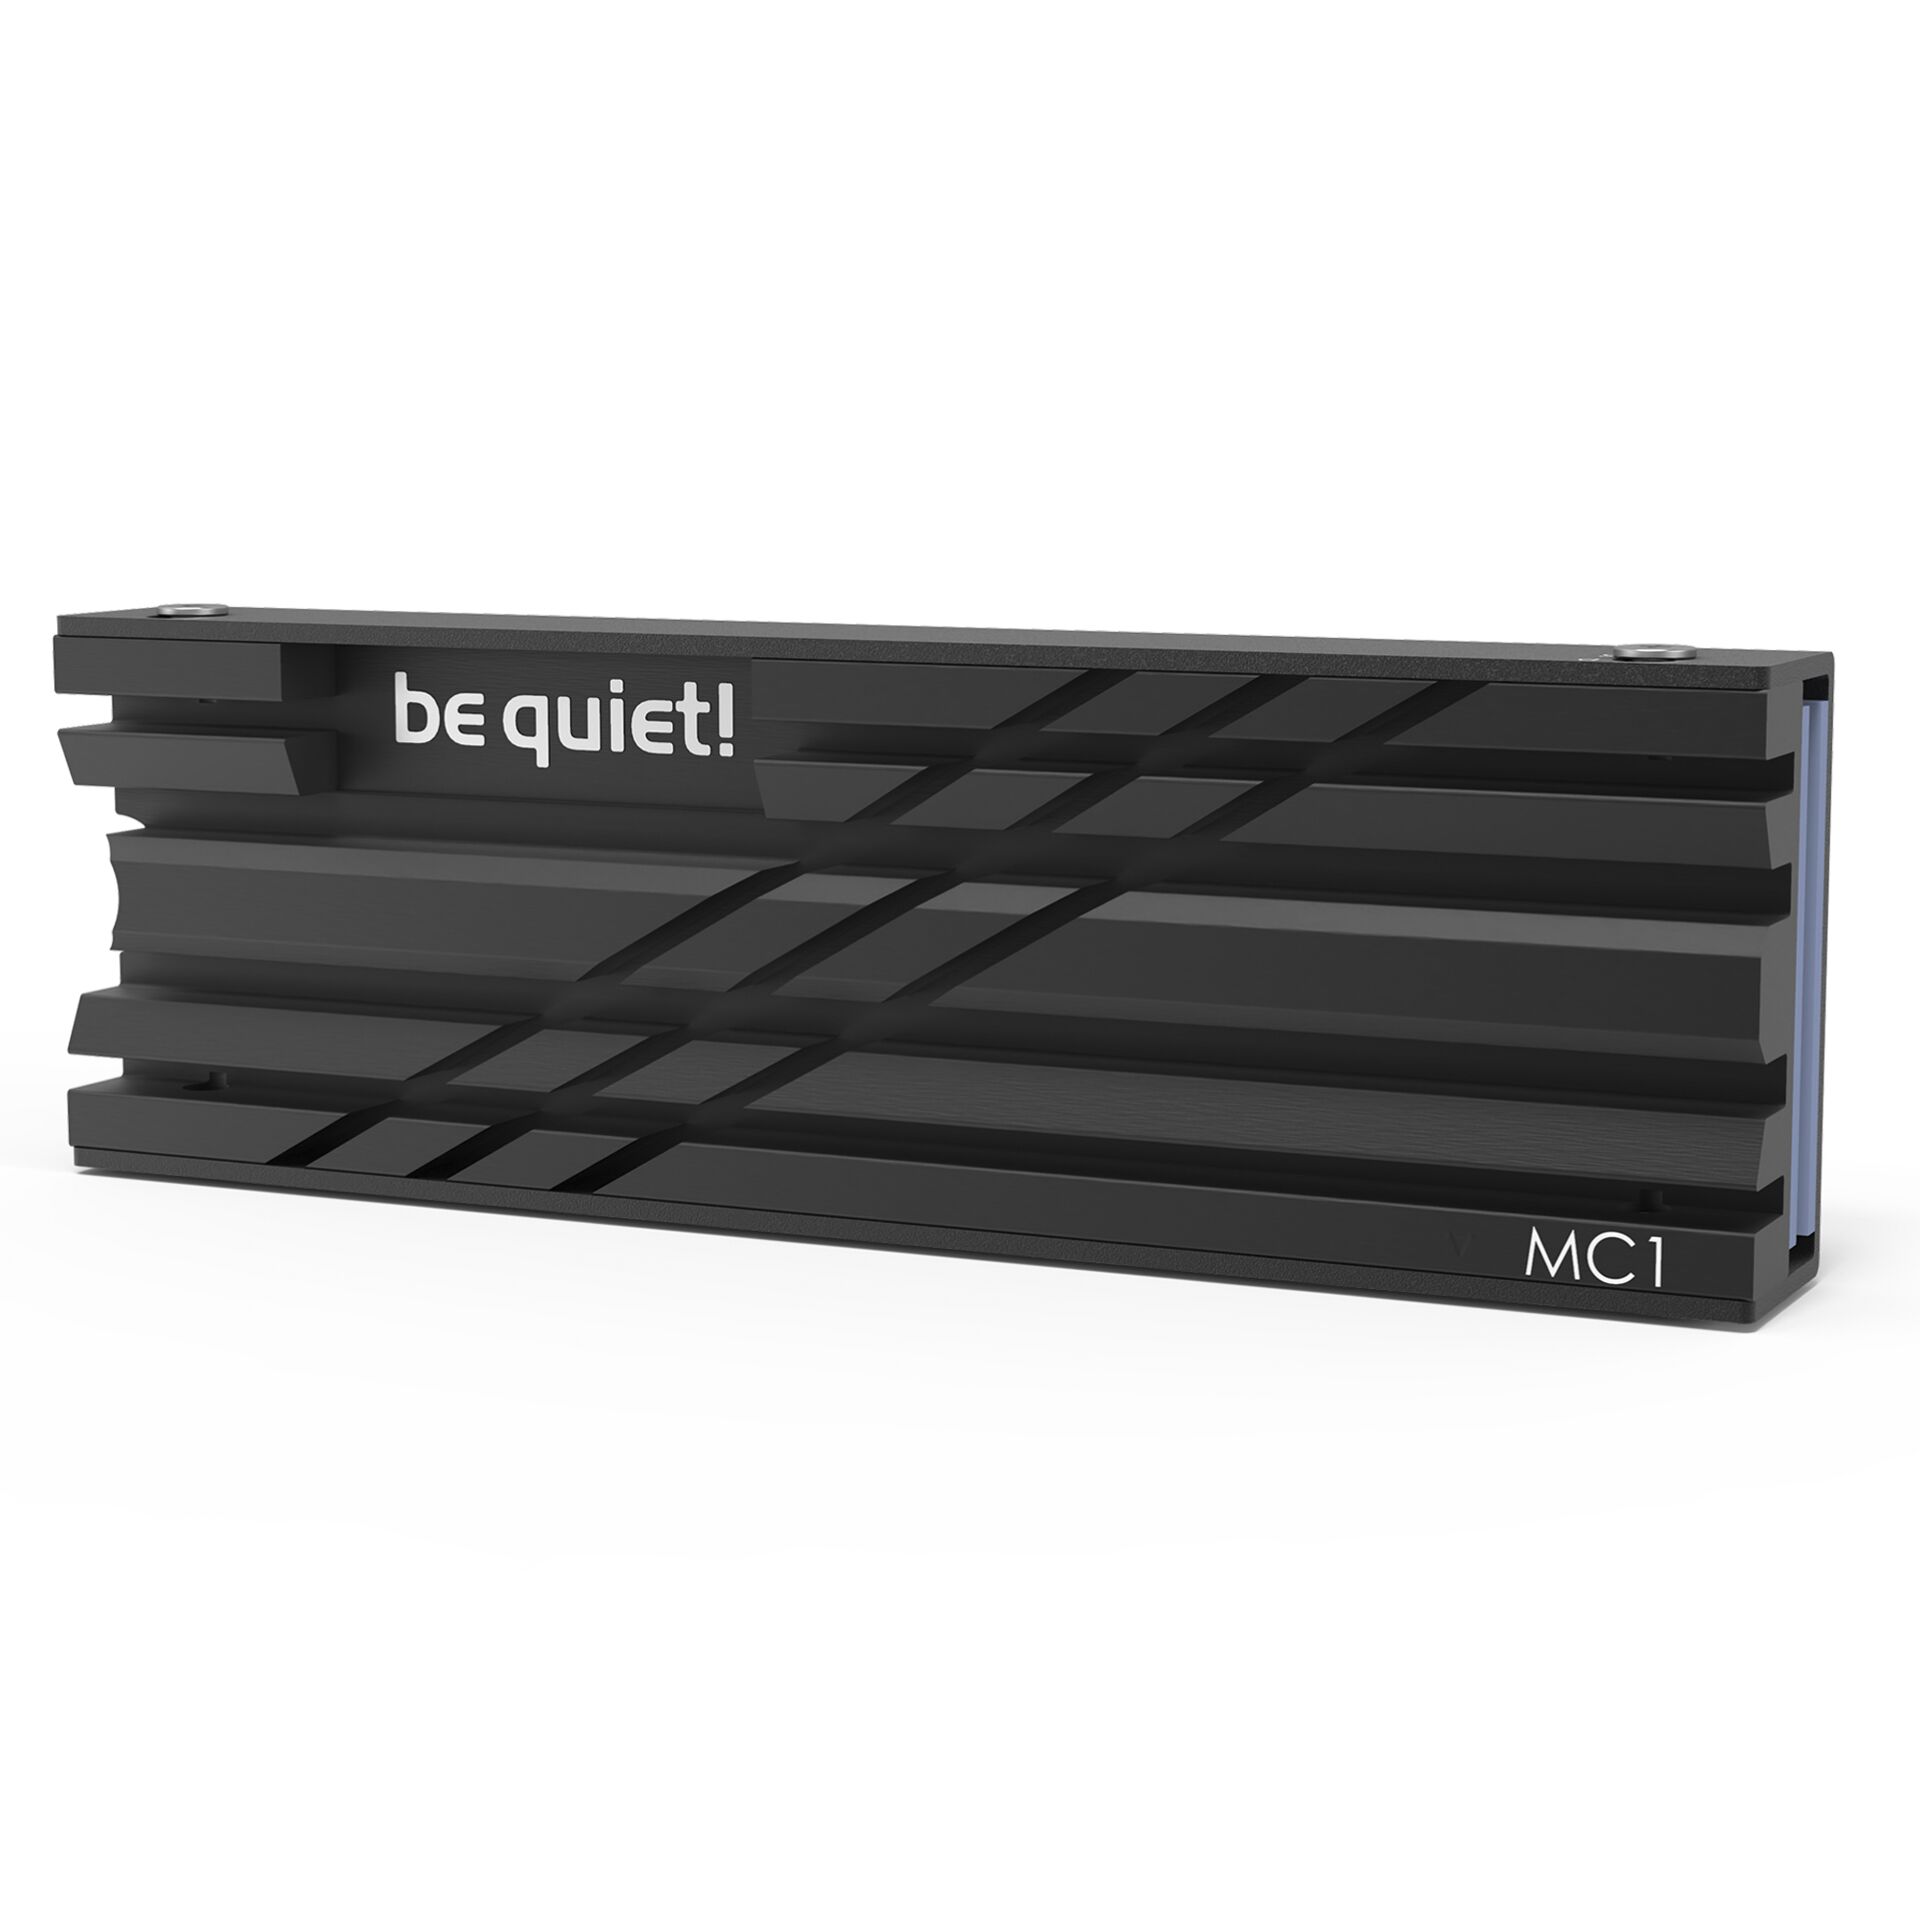 be quiet! MC1, M.2 SSD-Kühlkörper für PS5 Der perfekt passende SSD-Kühler für die PlayStation 5